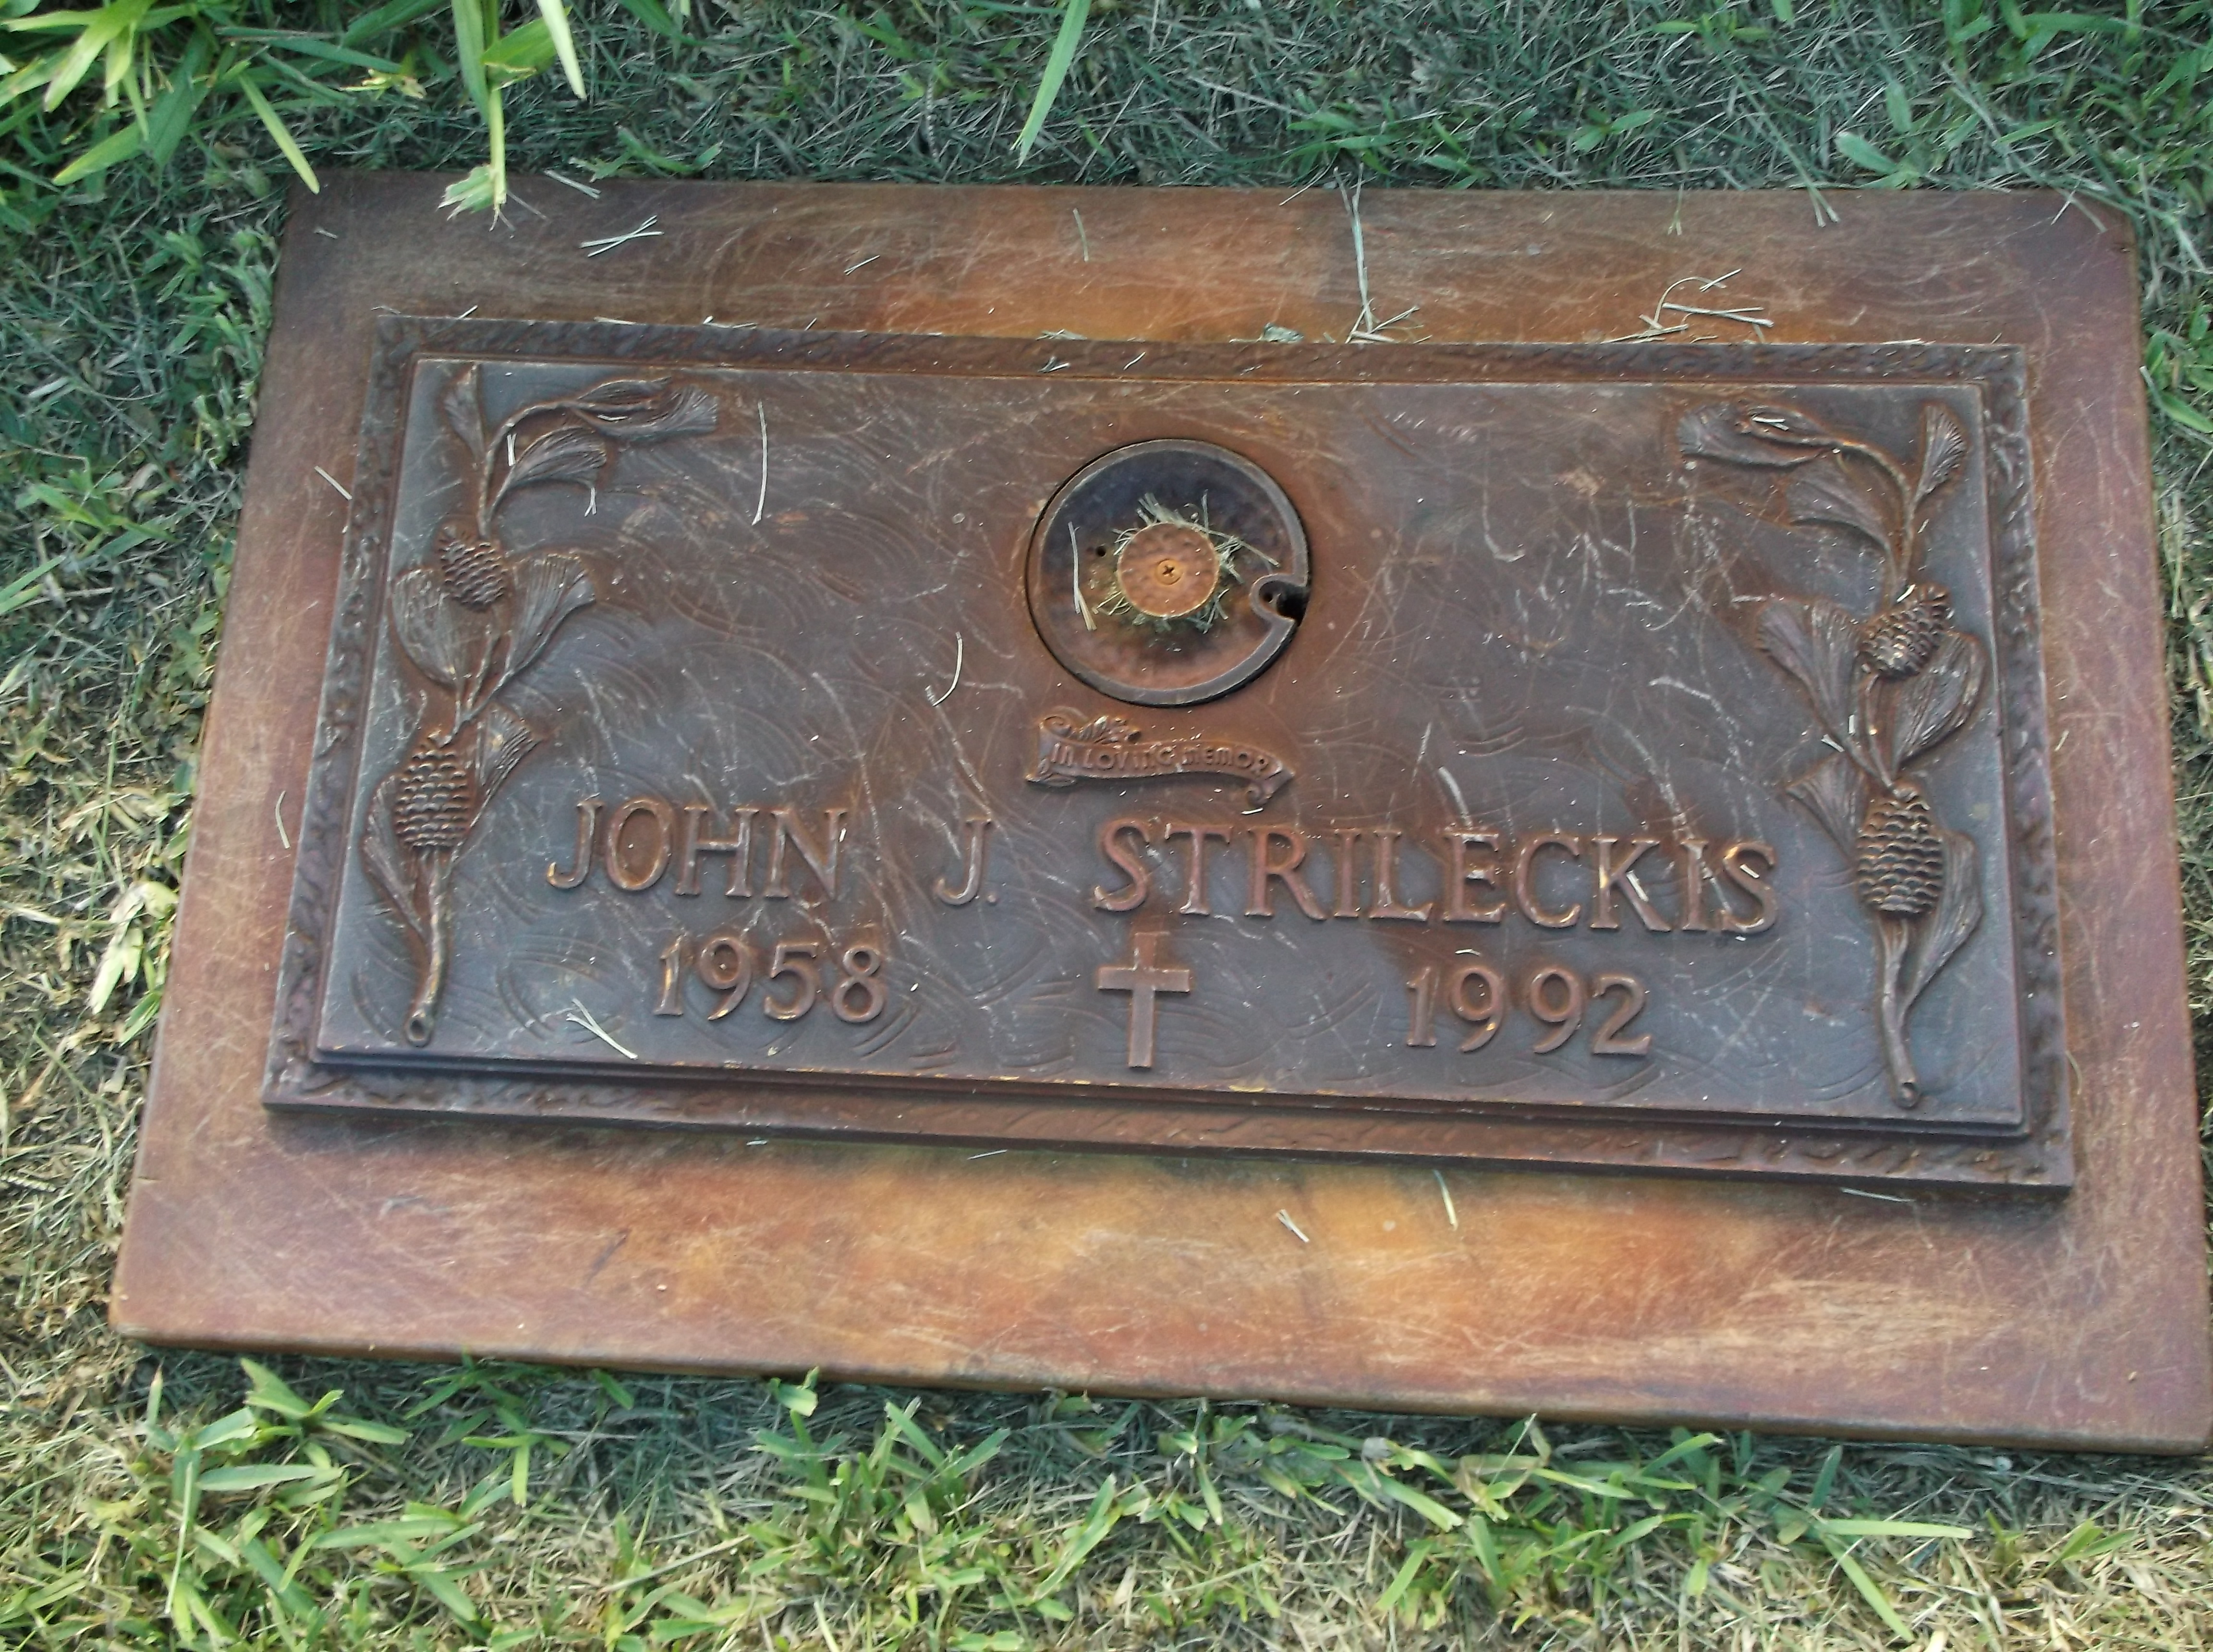 John J Strileckis